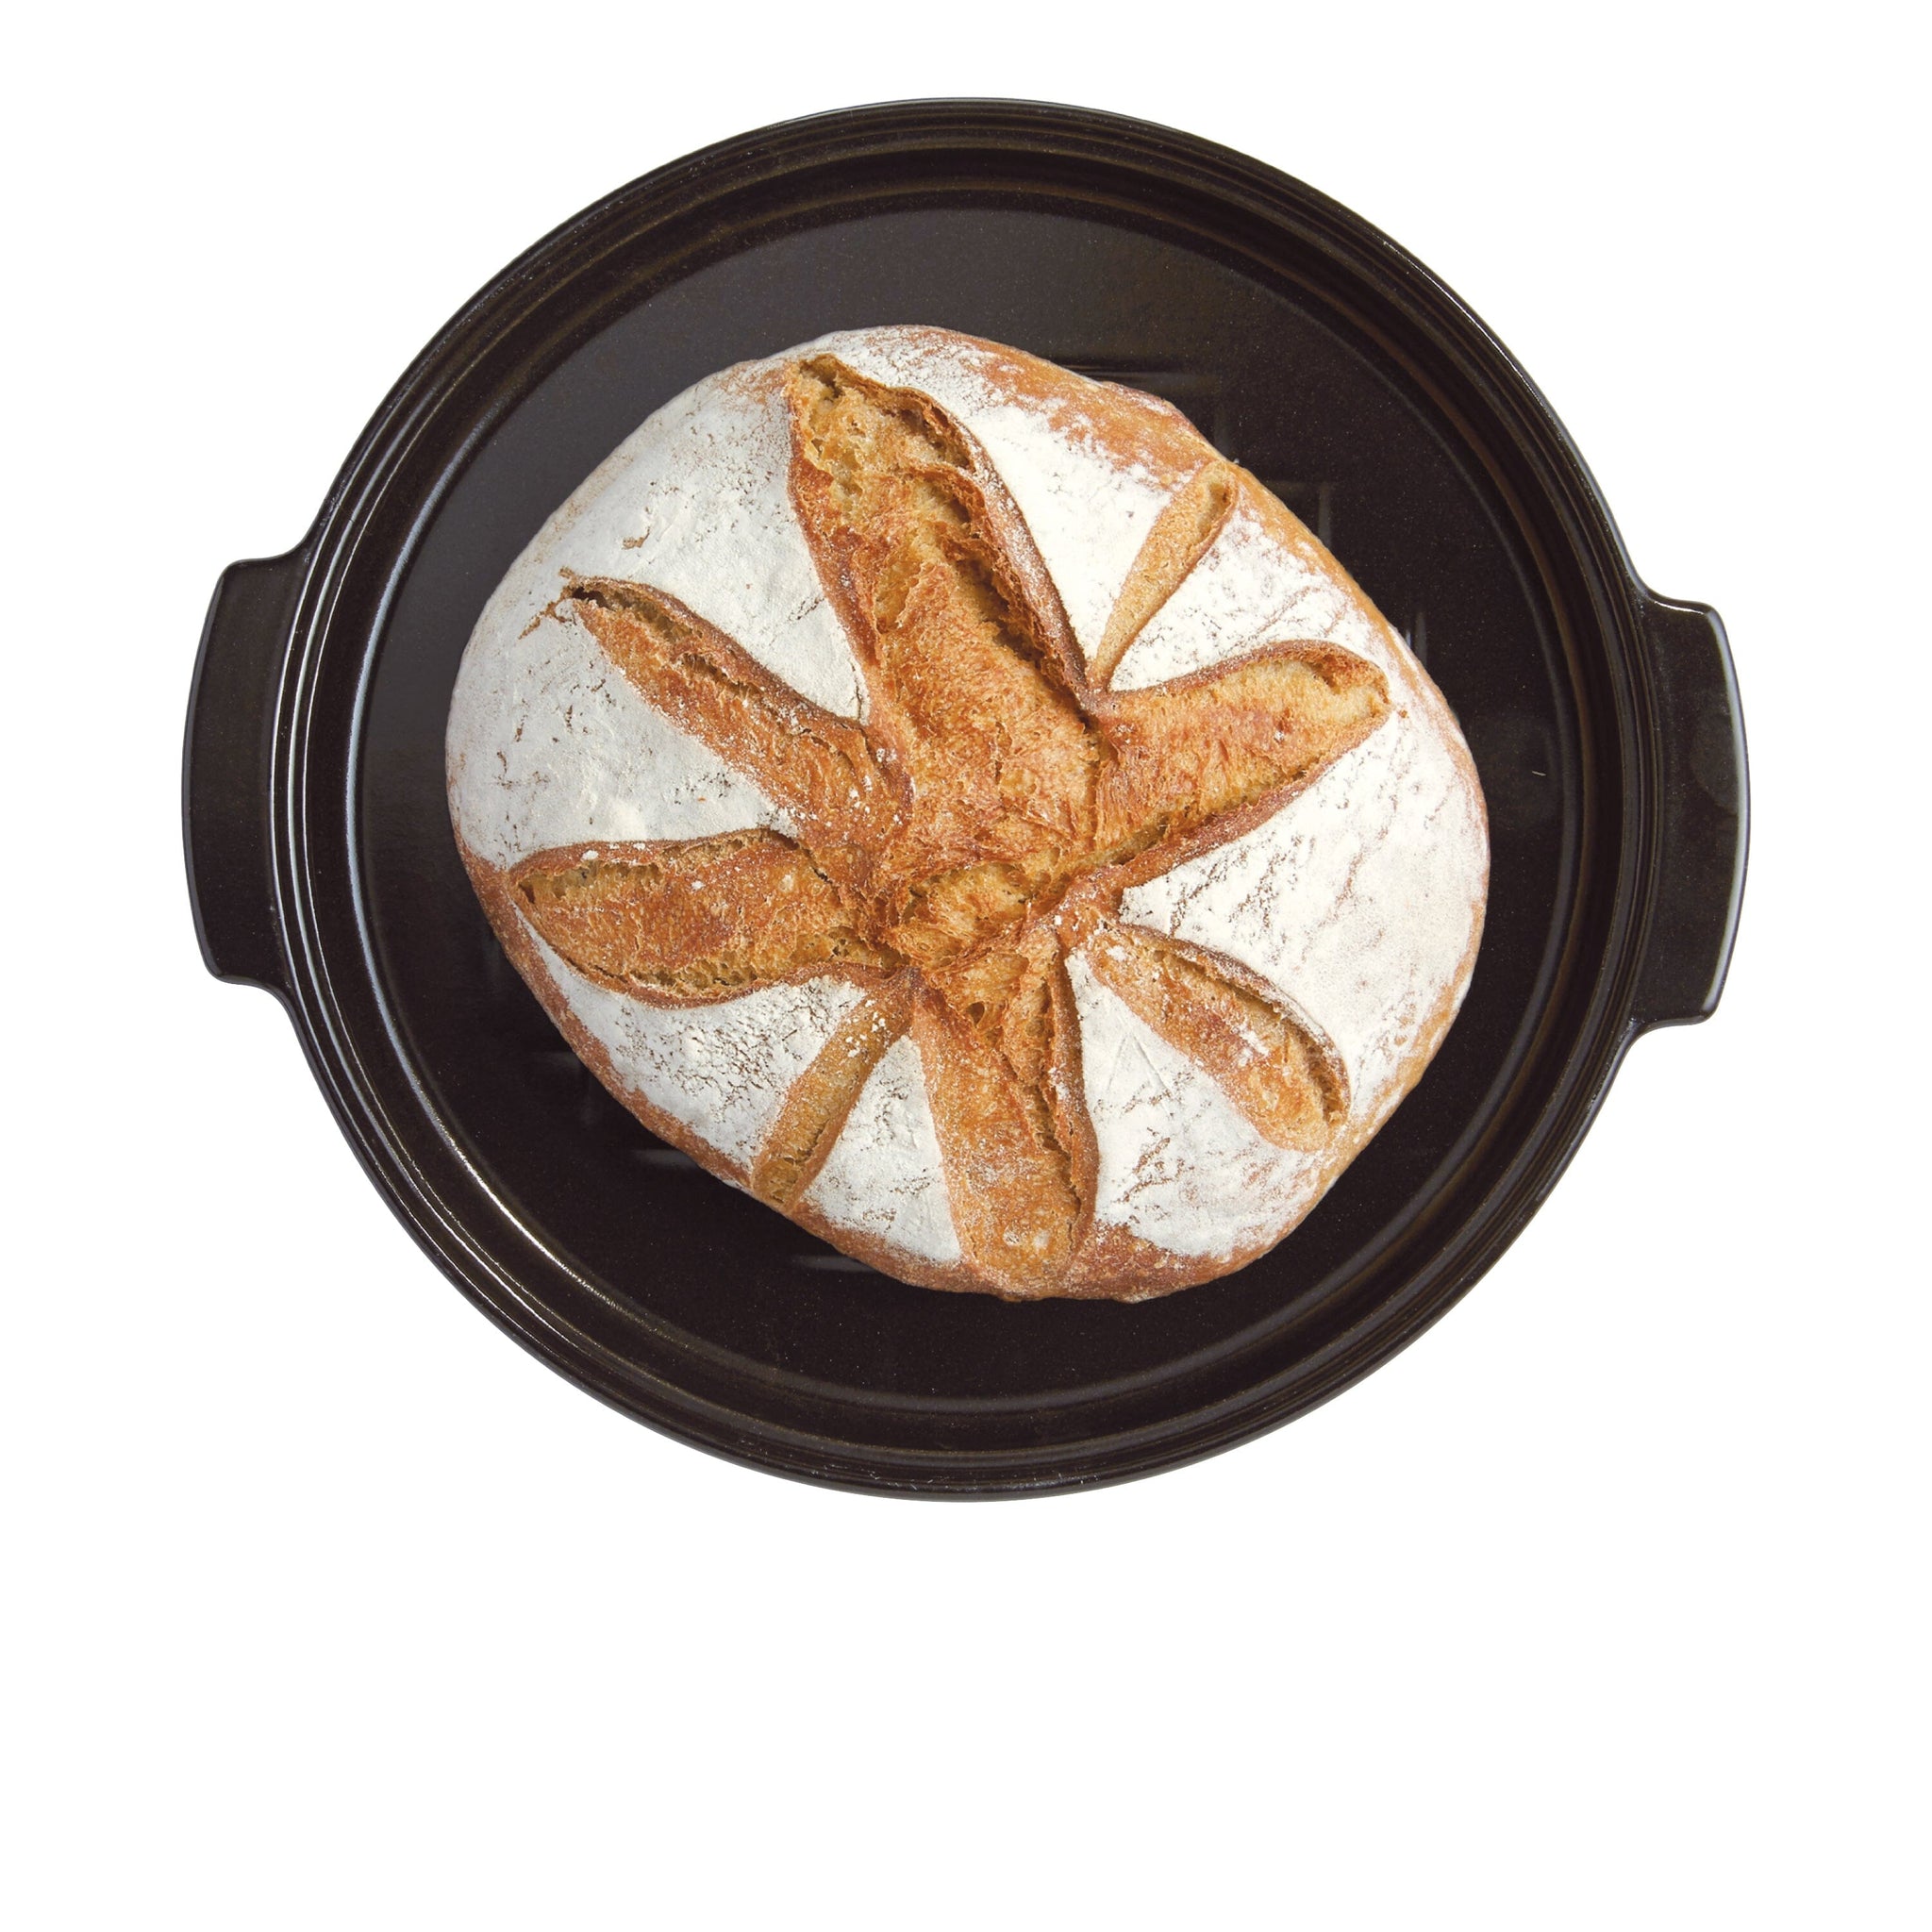 Emile Henry 13.2 x 11.2 x 7 Inch Round Ceramic Bread Maker Cloche,  Burgundy, 1 Piece - Harris Teeter